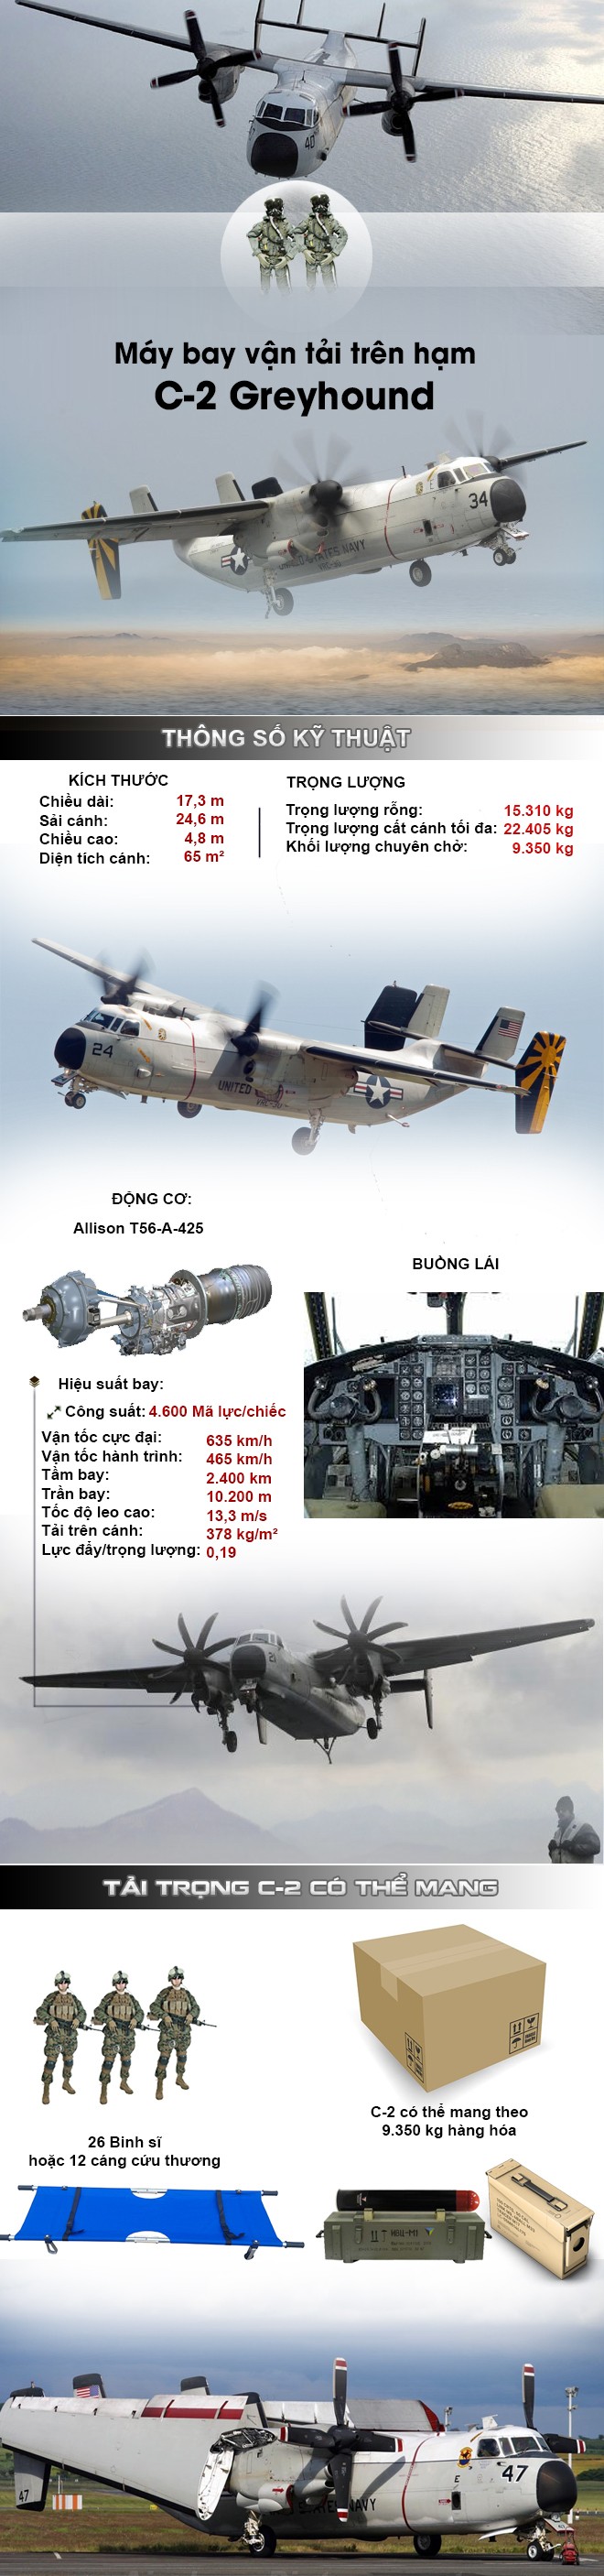 [Infographic] "Ngựa thồ trên hạm C-2" độc đáo của Mỹ khiến Nga, Trung khâm phục, chuẩn bị tới Việt Nam ảnh 2